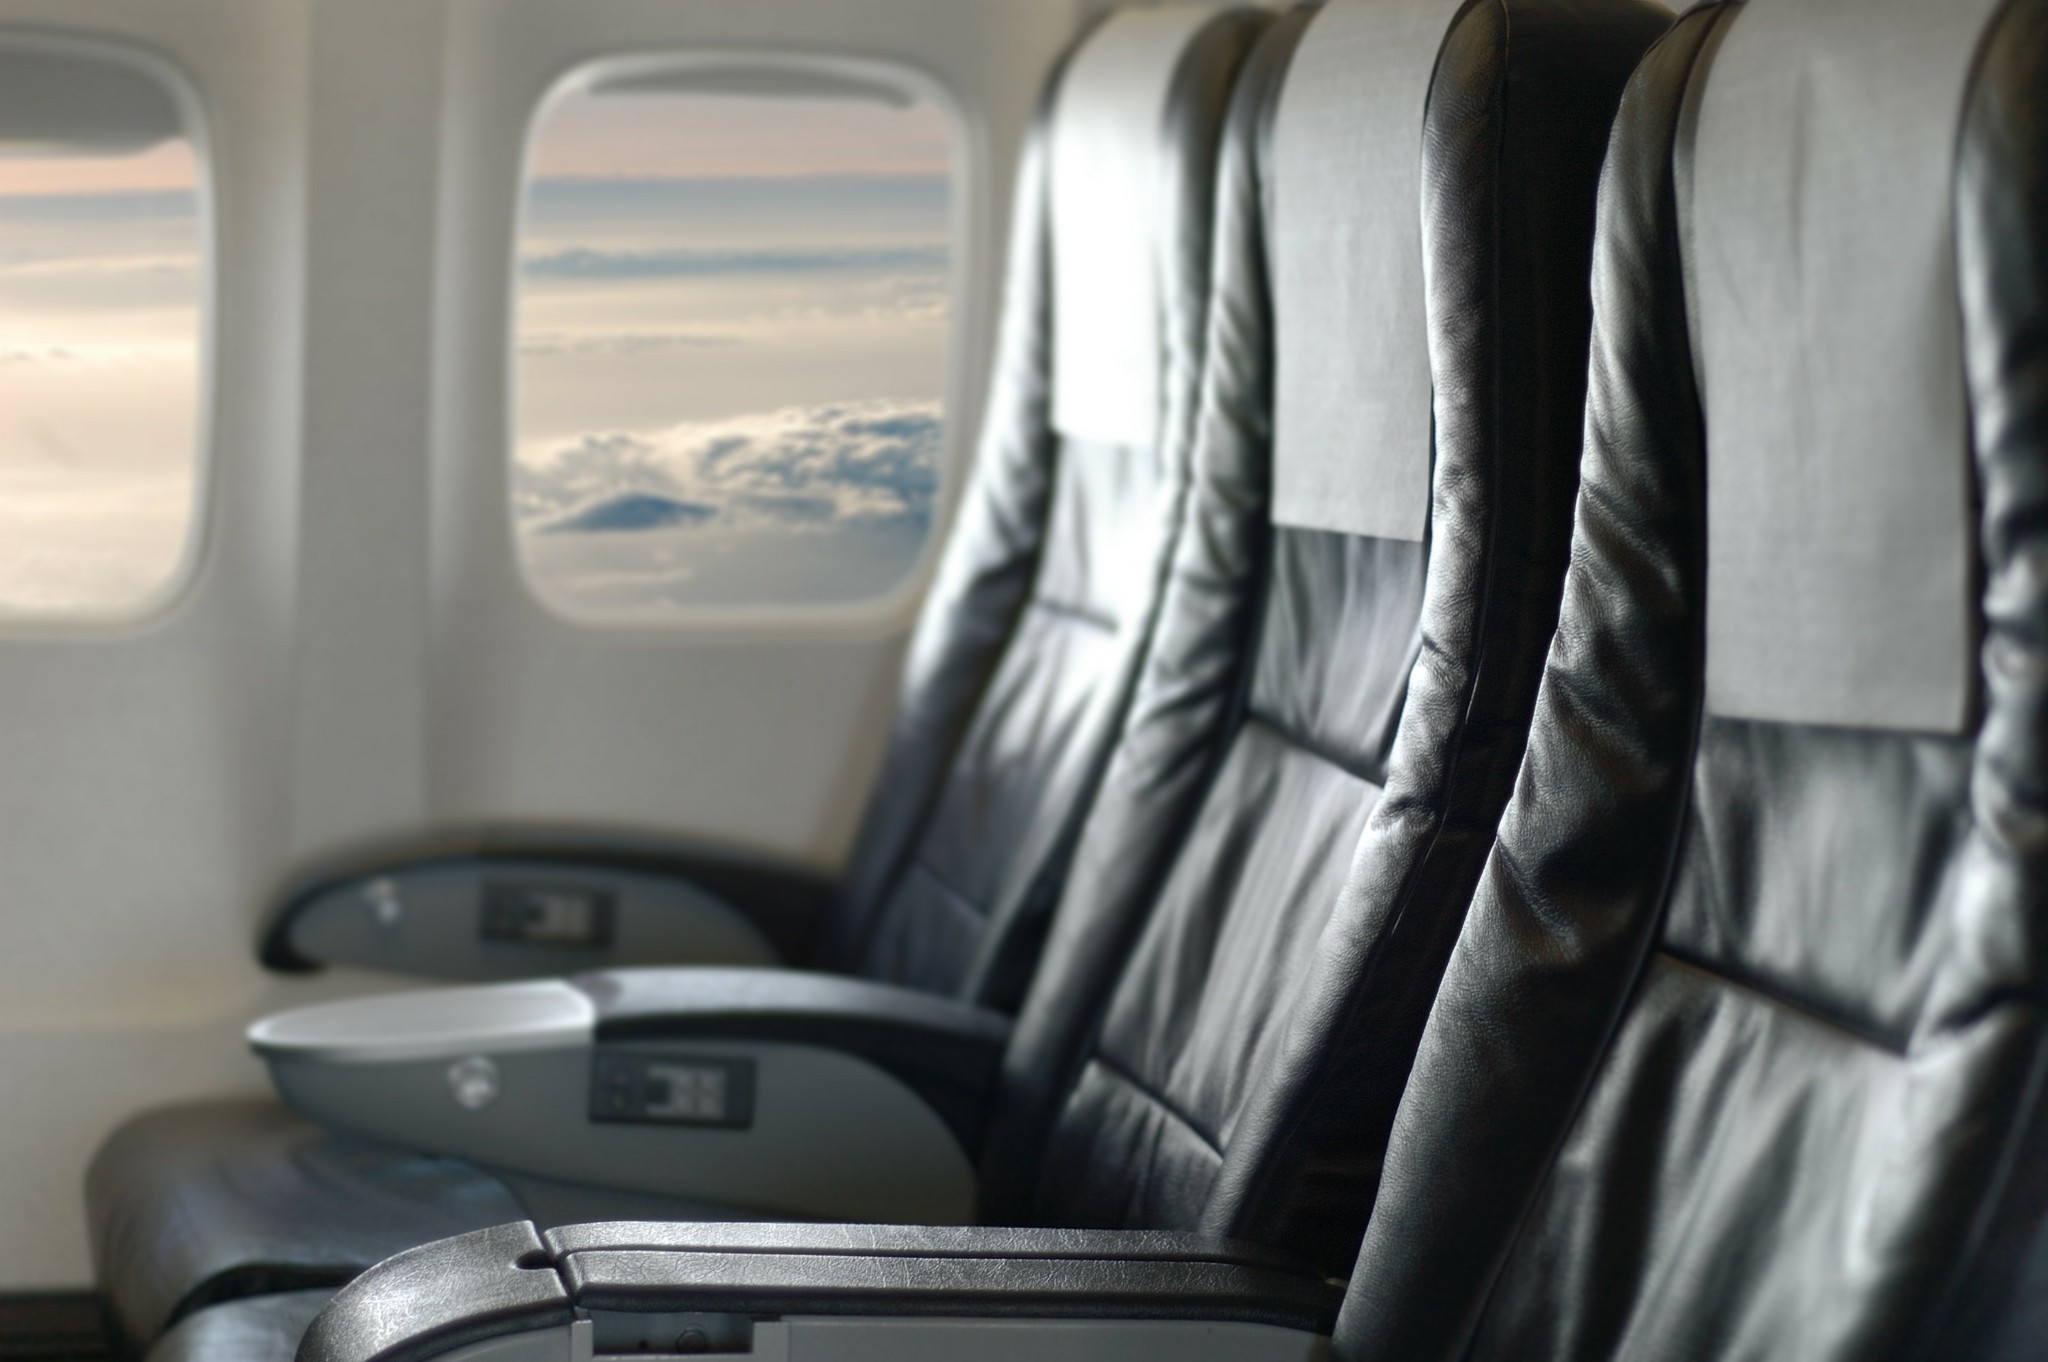 Καλοί τρόποι στο αεροπλάνο: Είναι σωστό να “ρίχνουμε” το κάθισμά μας μειώνοντας τον χώρο του επιβάτη πίσω μας;